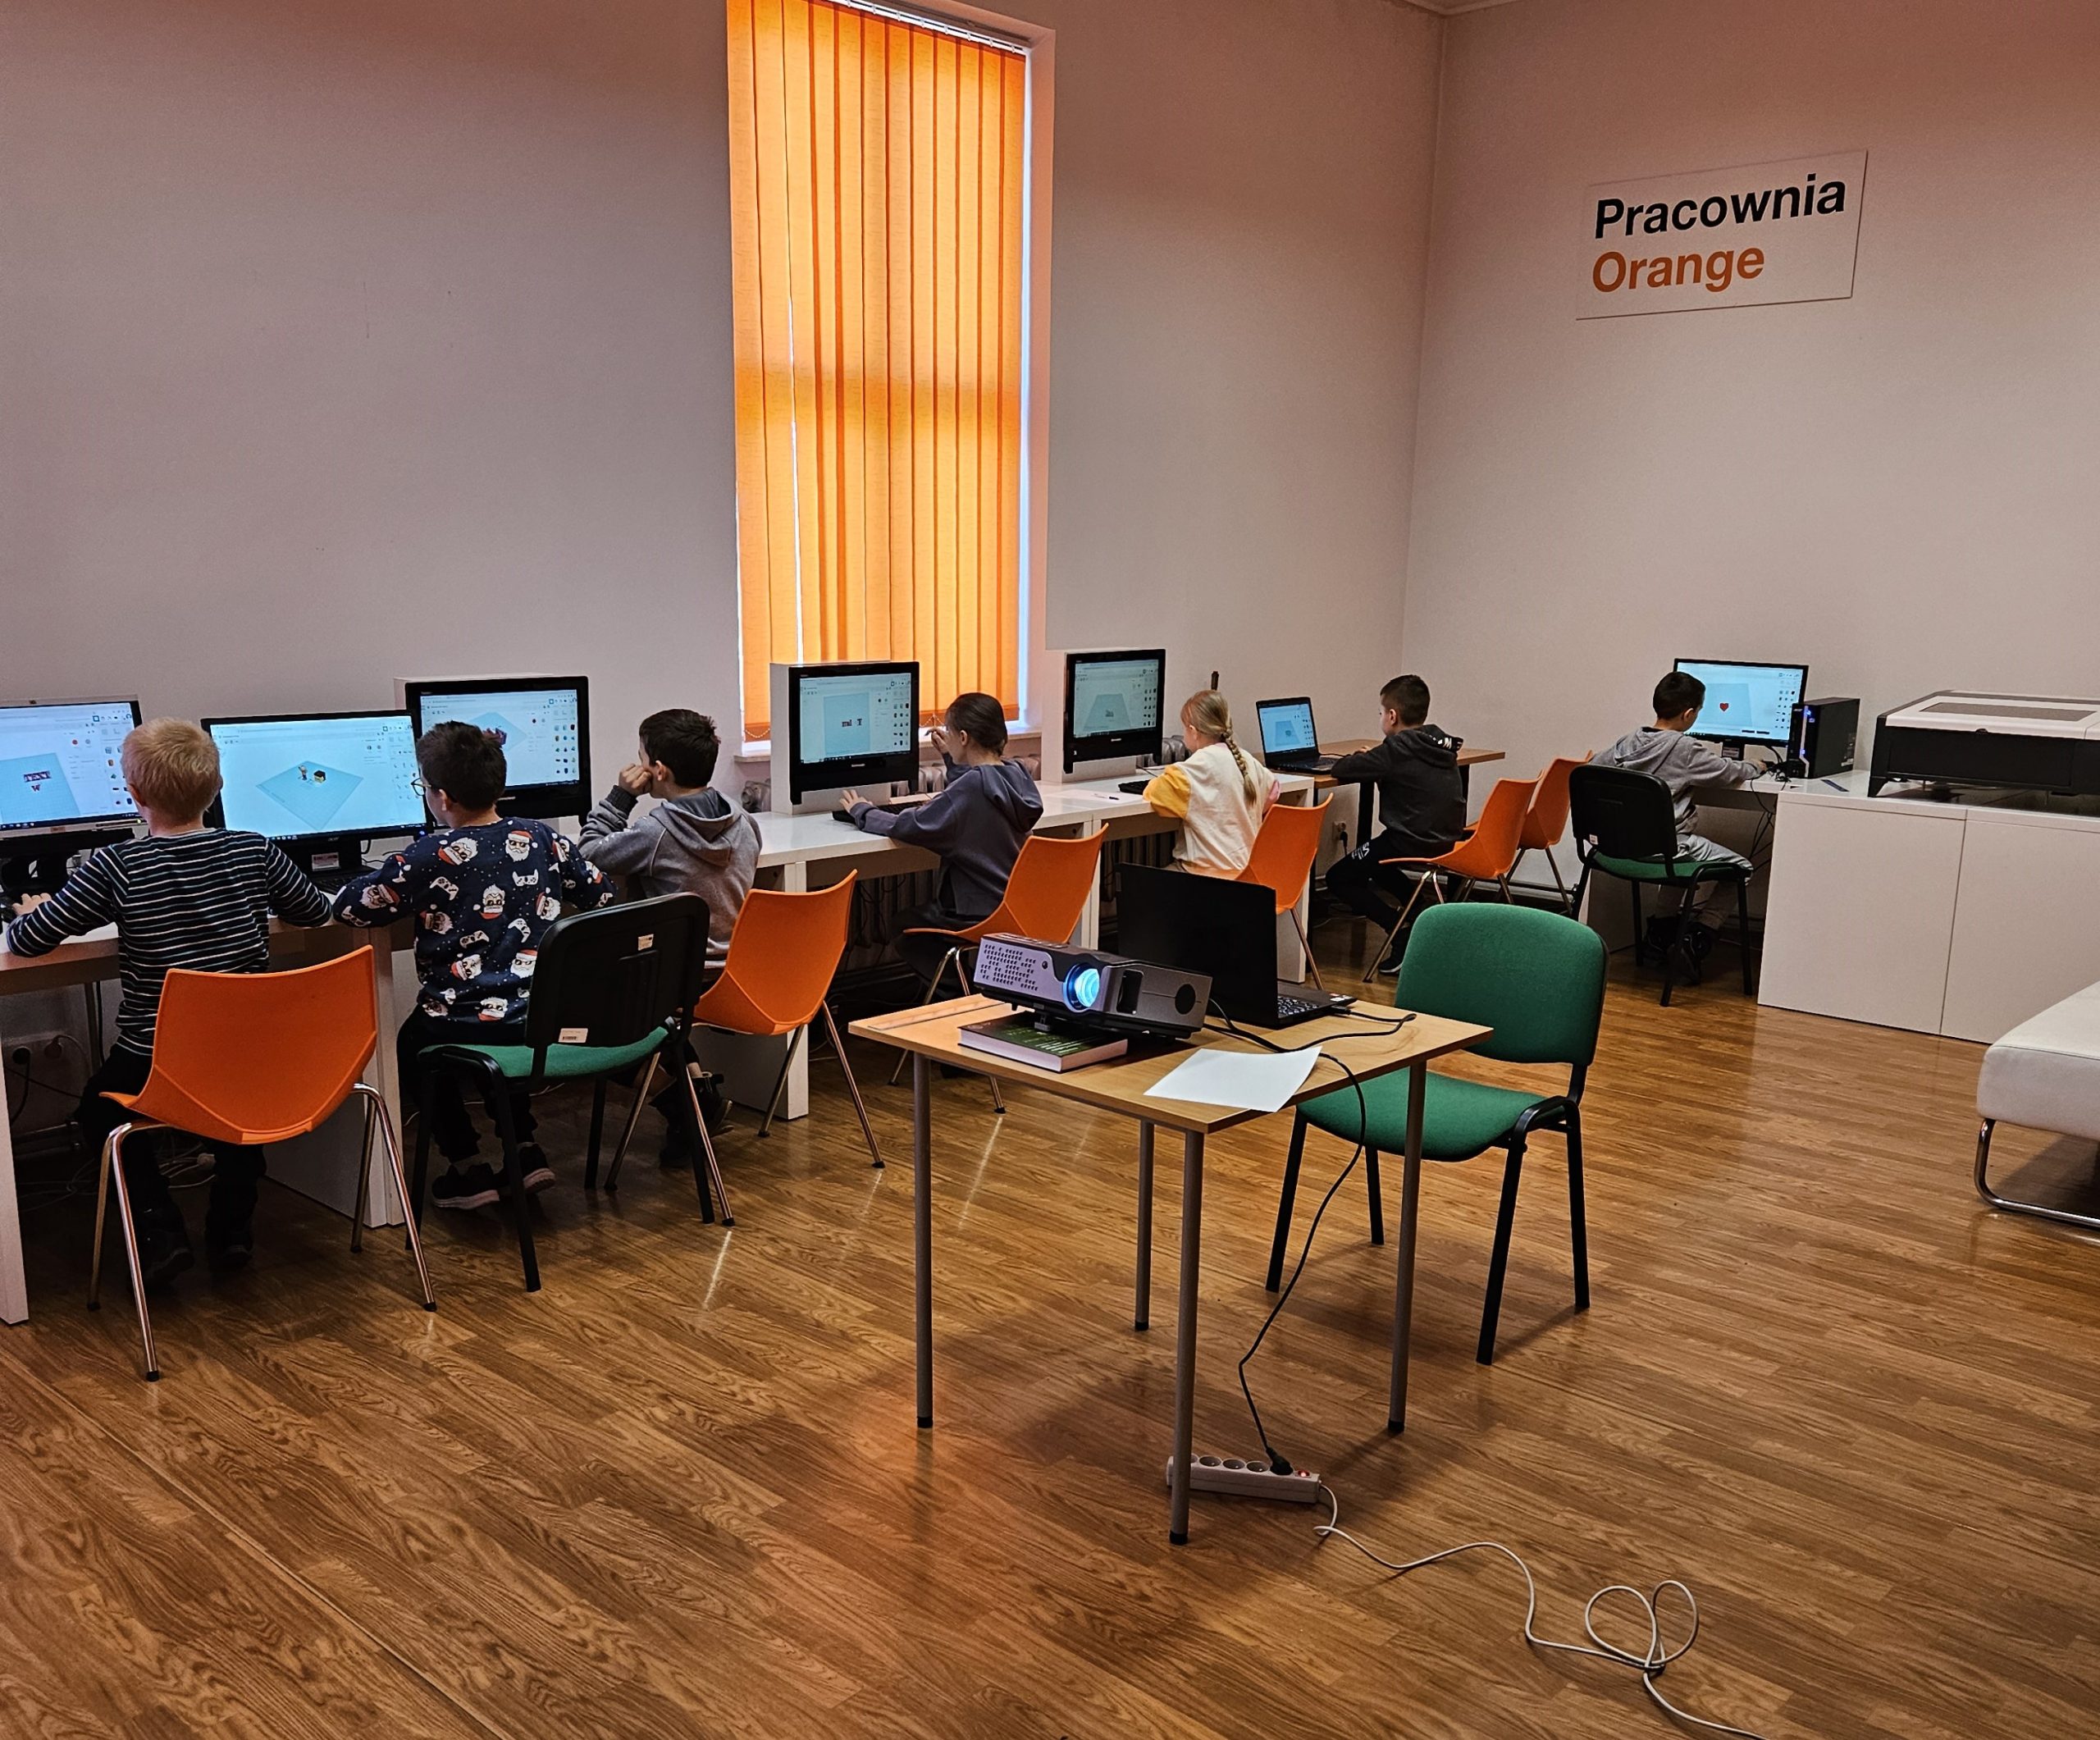 Grupa dzieci siedzących przy komputerach.